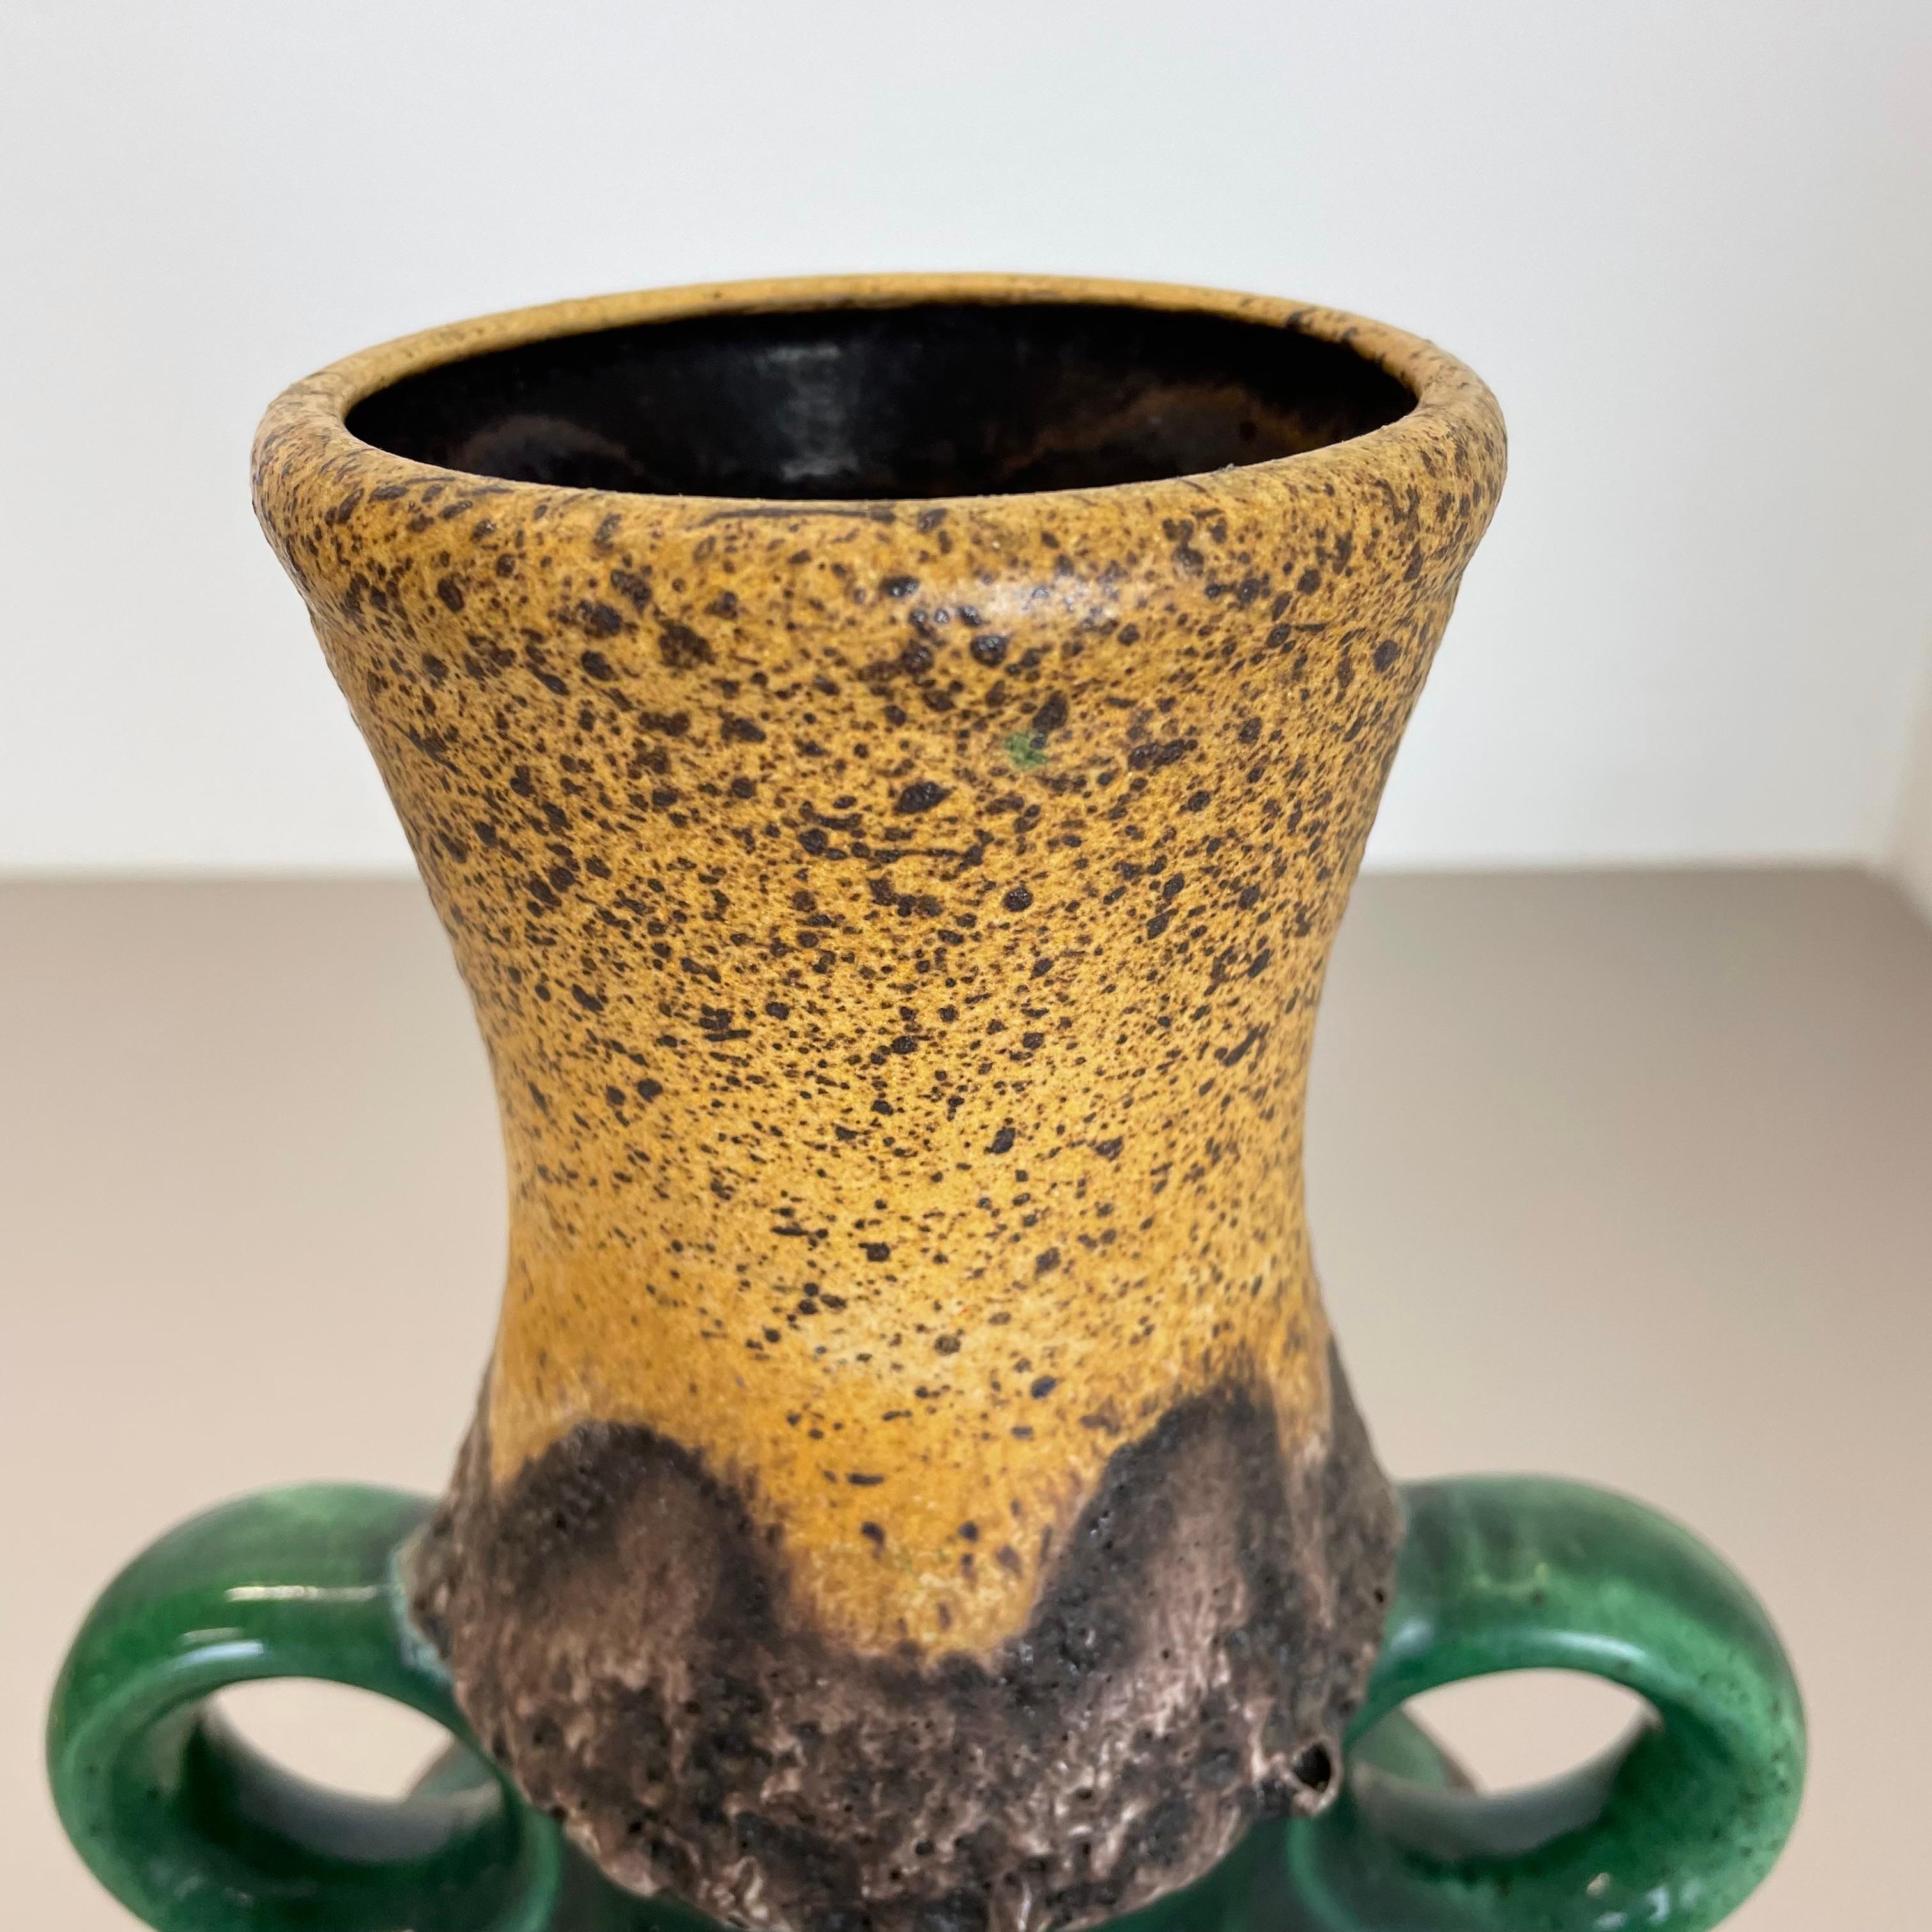 Rare Green Brutalist Fat Lava Ceramic Vases by Dümler and Breiden Germany, 1970s For Sale 10